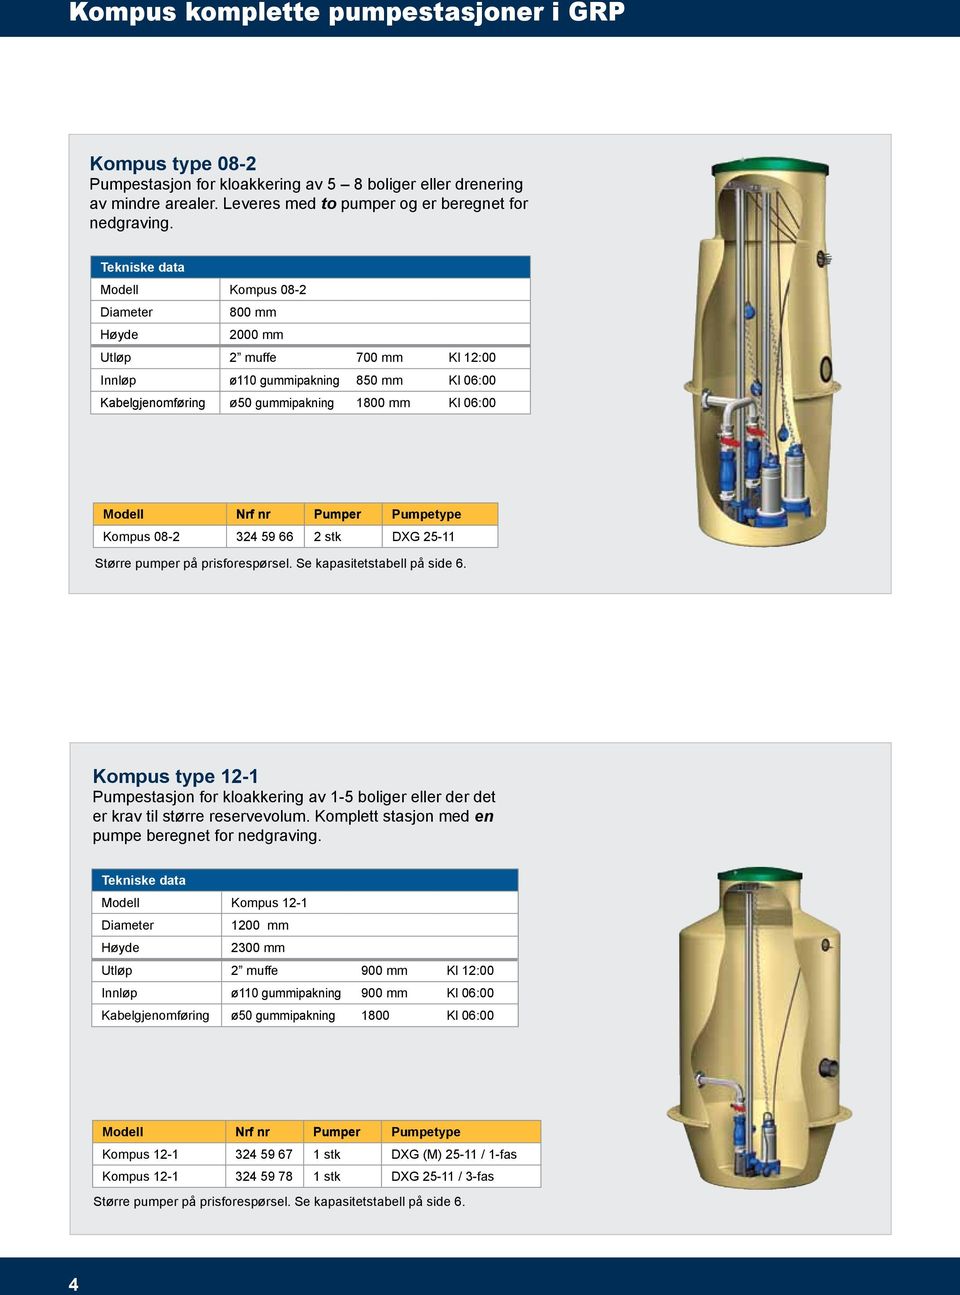 Pumper Pumpetype Kompus 08-2 324 59 66 2 stk DXG 25-11 Større pumper på prisforespørsel. Se kapasitetstabell på side 6.